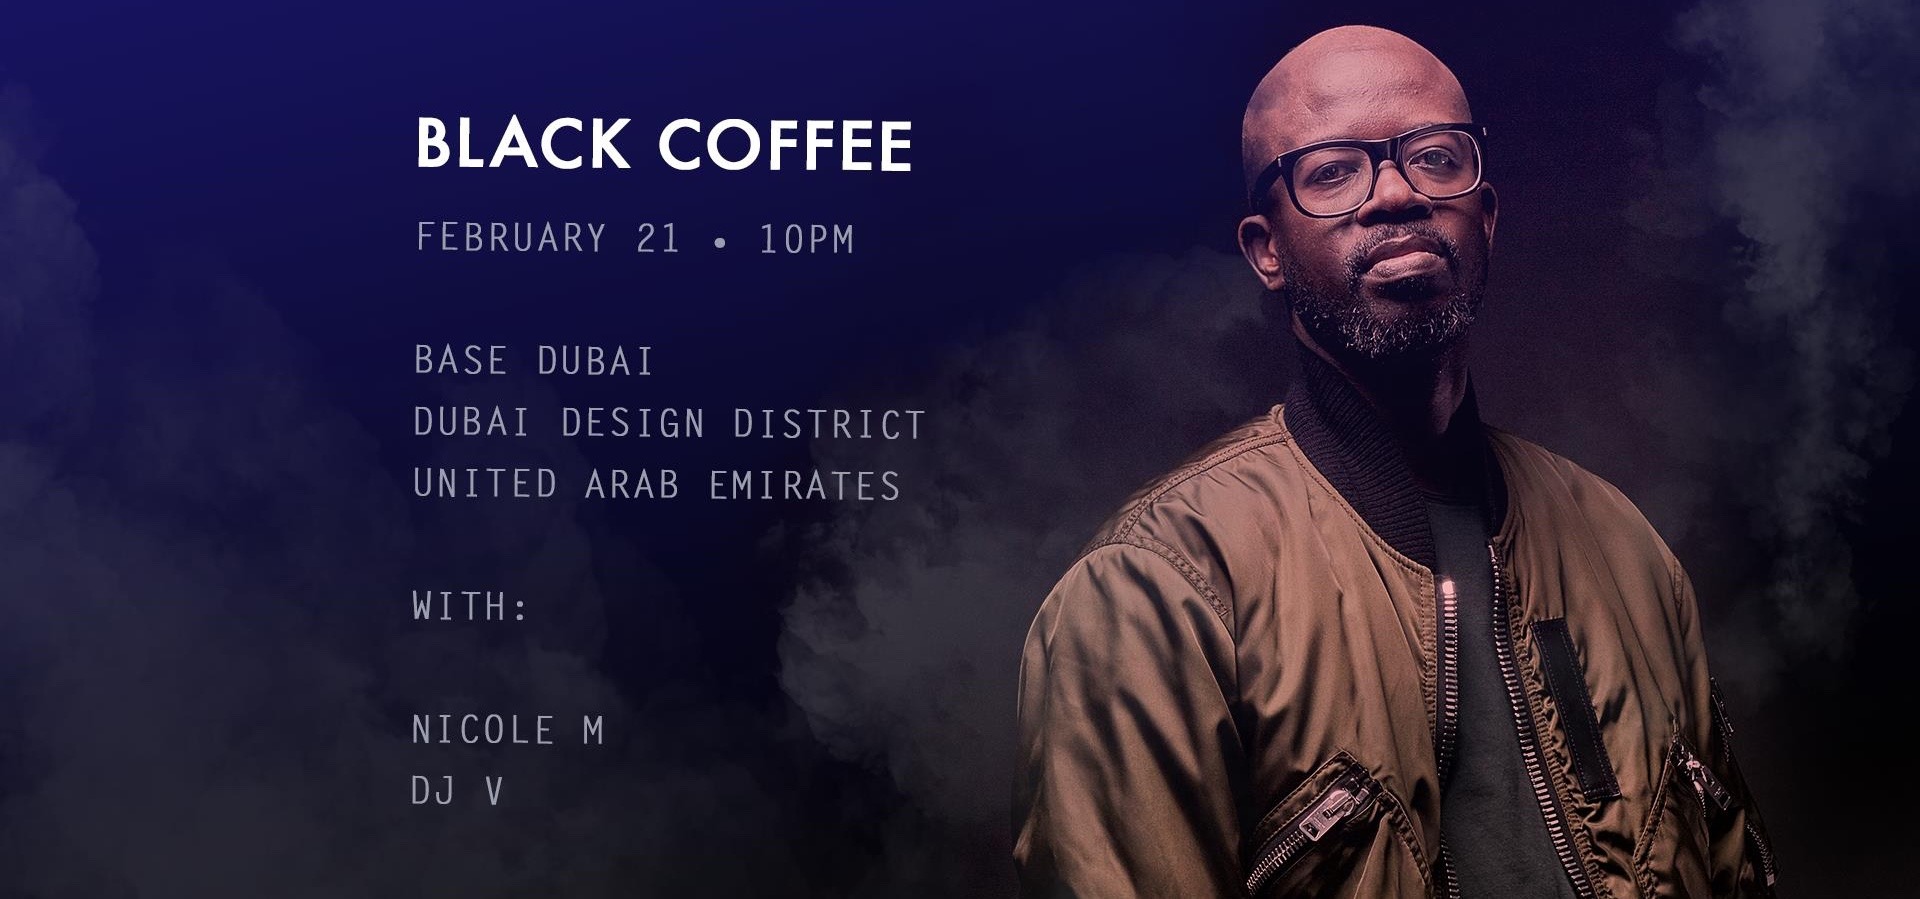 Base presents Black Coffee - Coming Soon in UAE